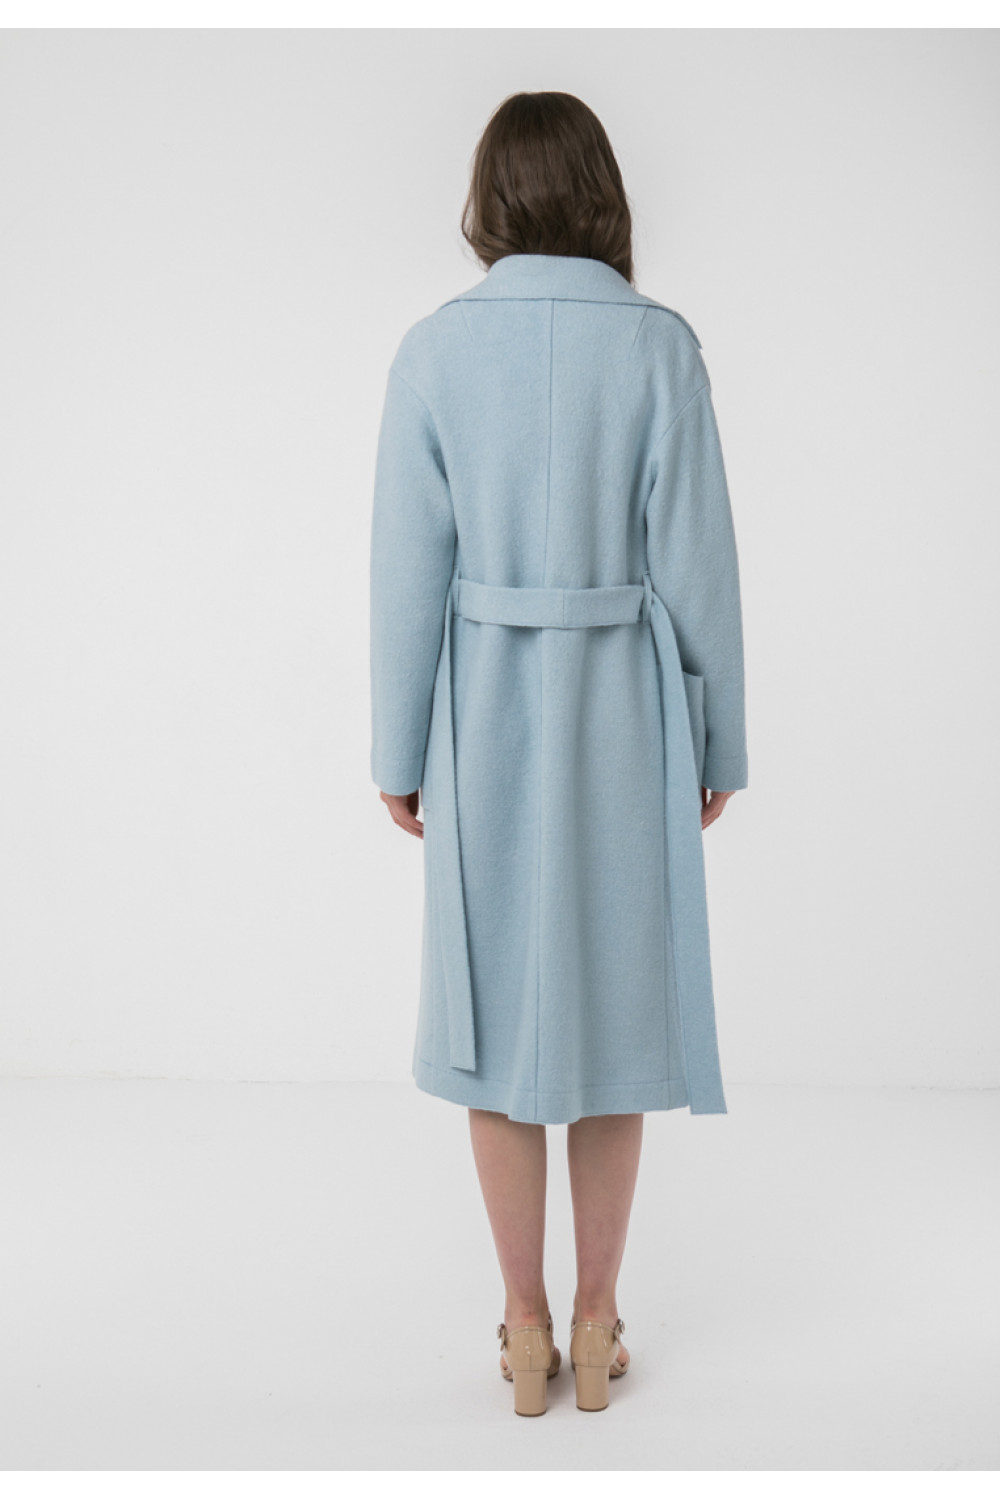 Классическое пальто-халат без подкладки AS55V/голубой